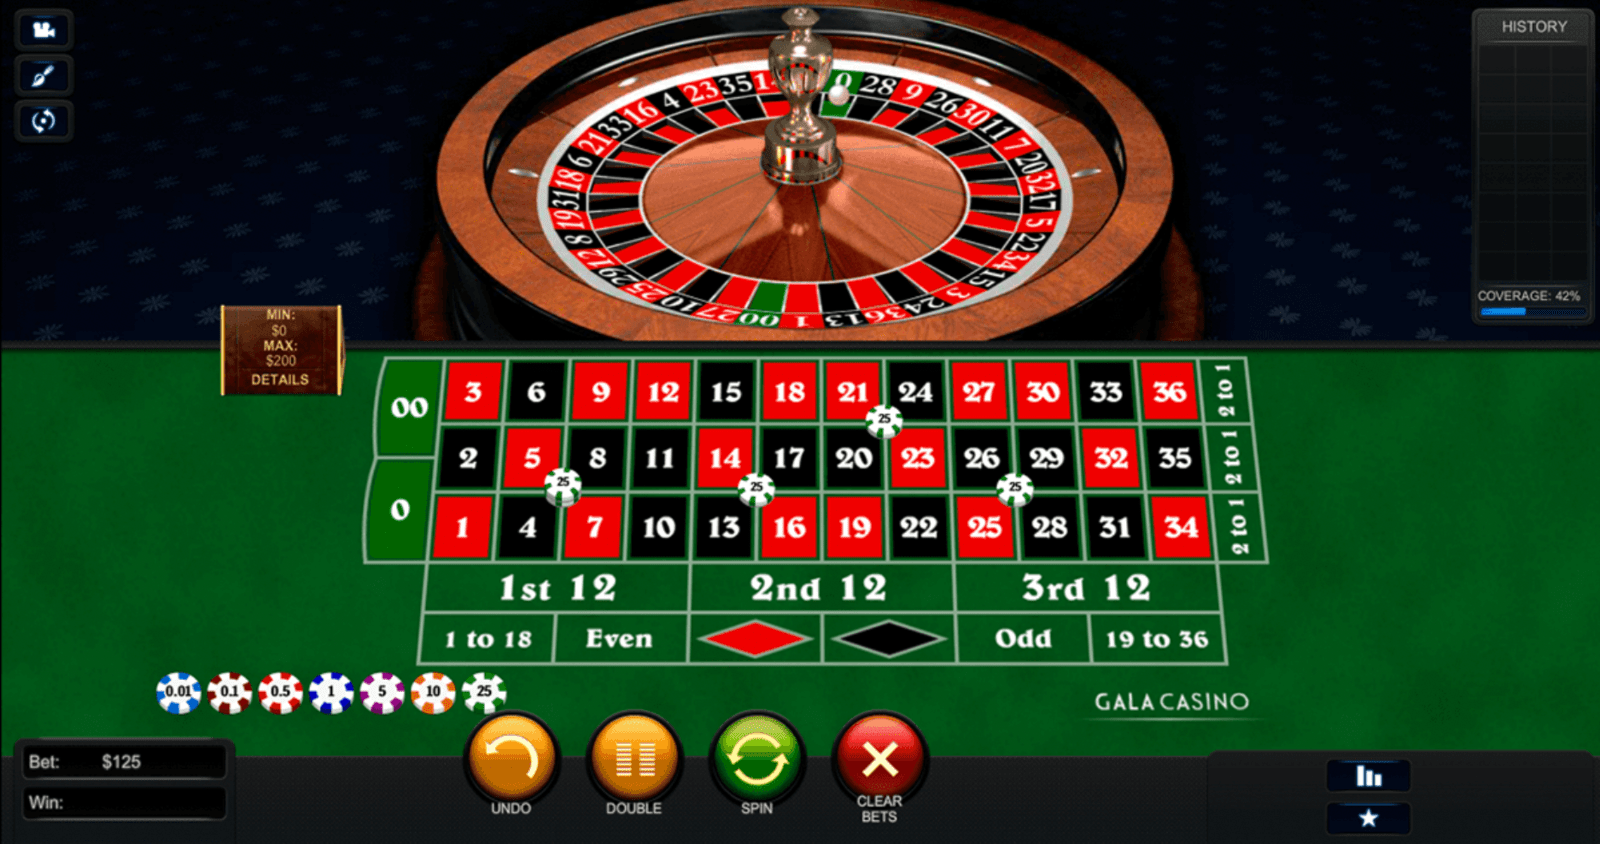 Jugar a Premium American Roulette de Playtech en casinos de España